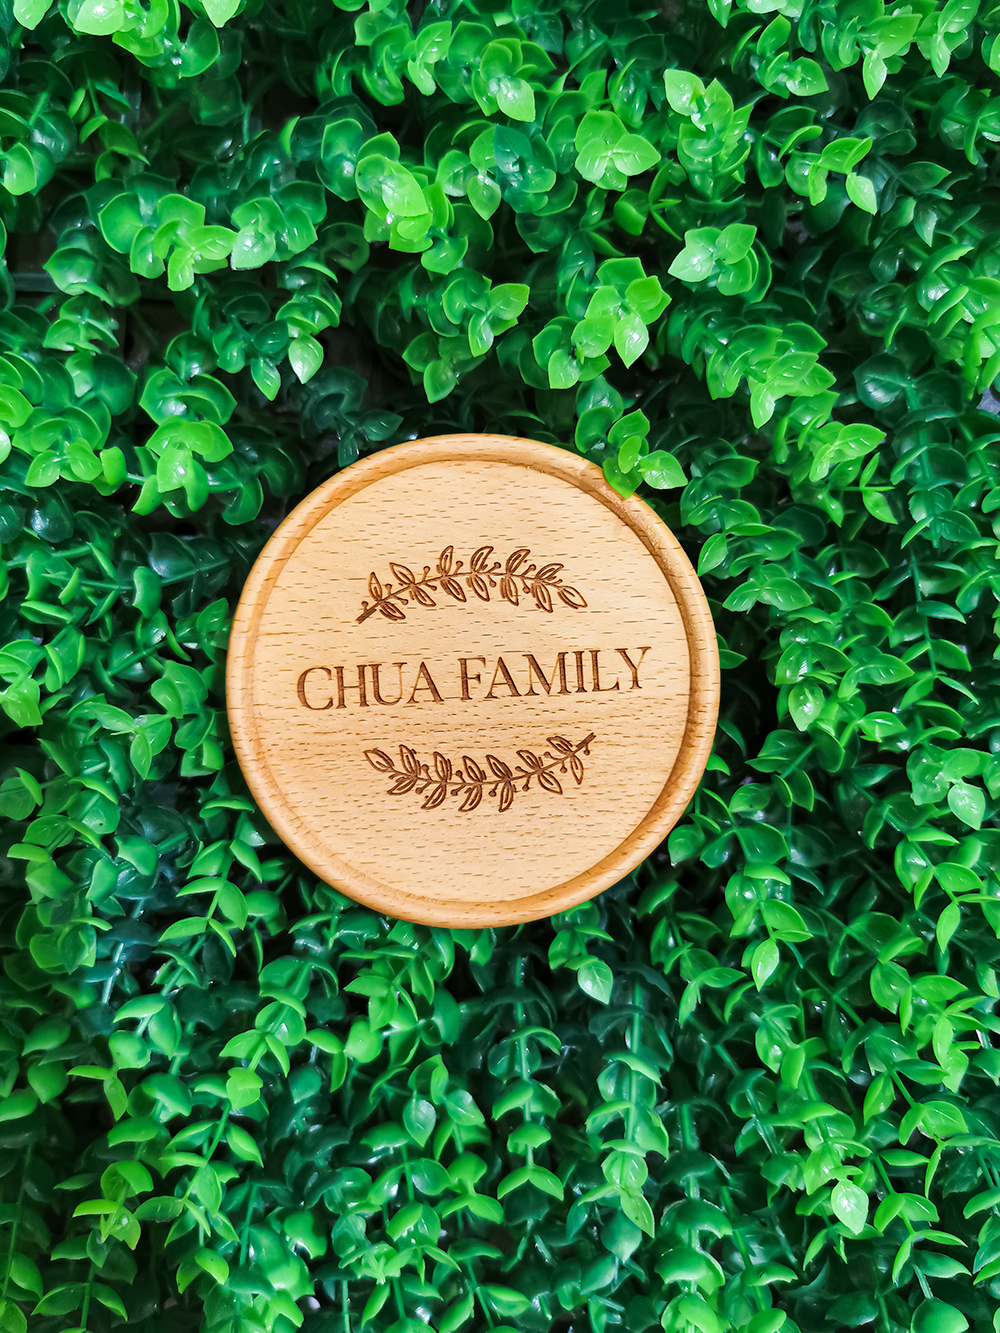 "Chua Family" Wood Coaster - 1 pcs - Gifts by Art Tree